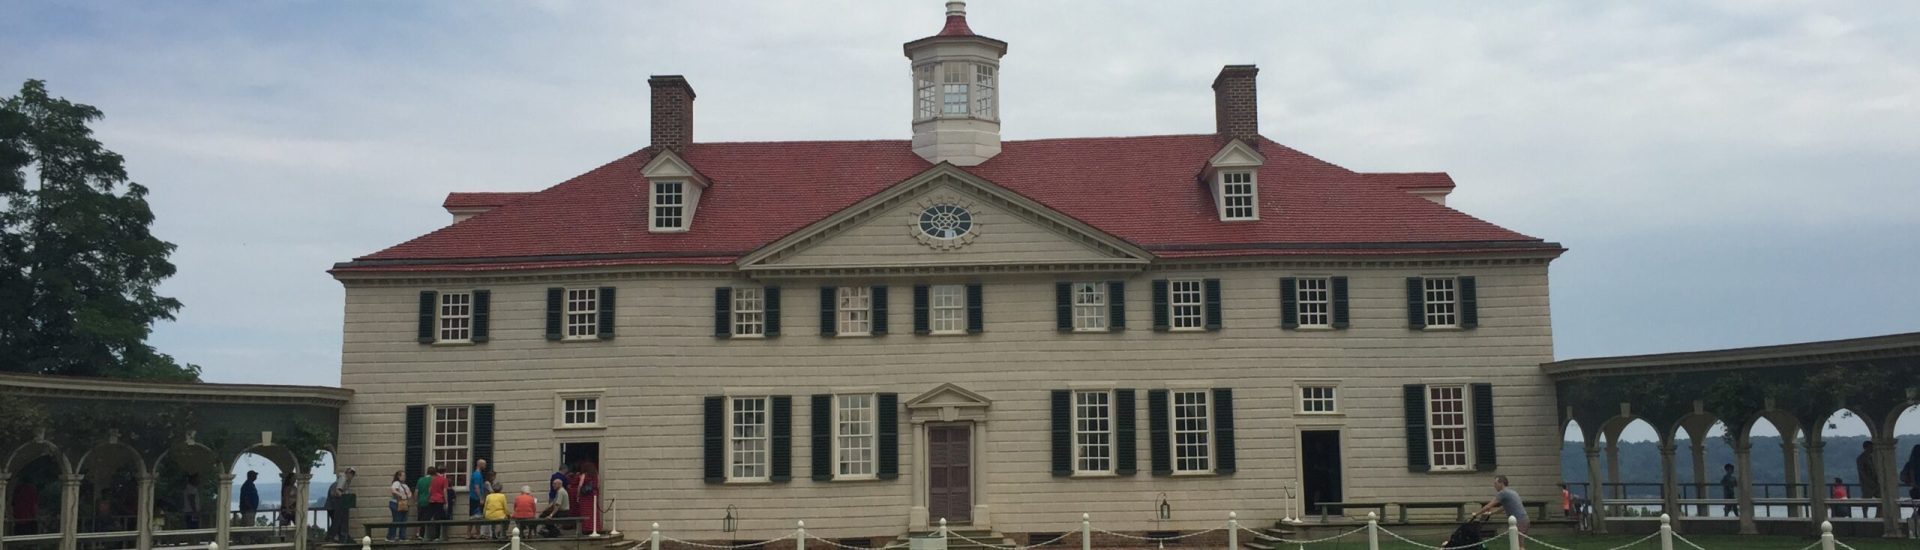 Washington Mount Vernon